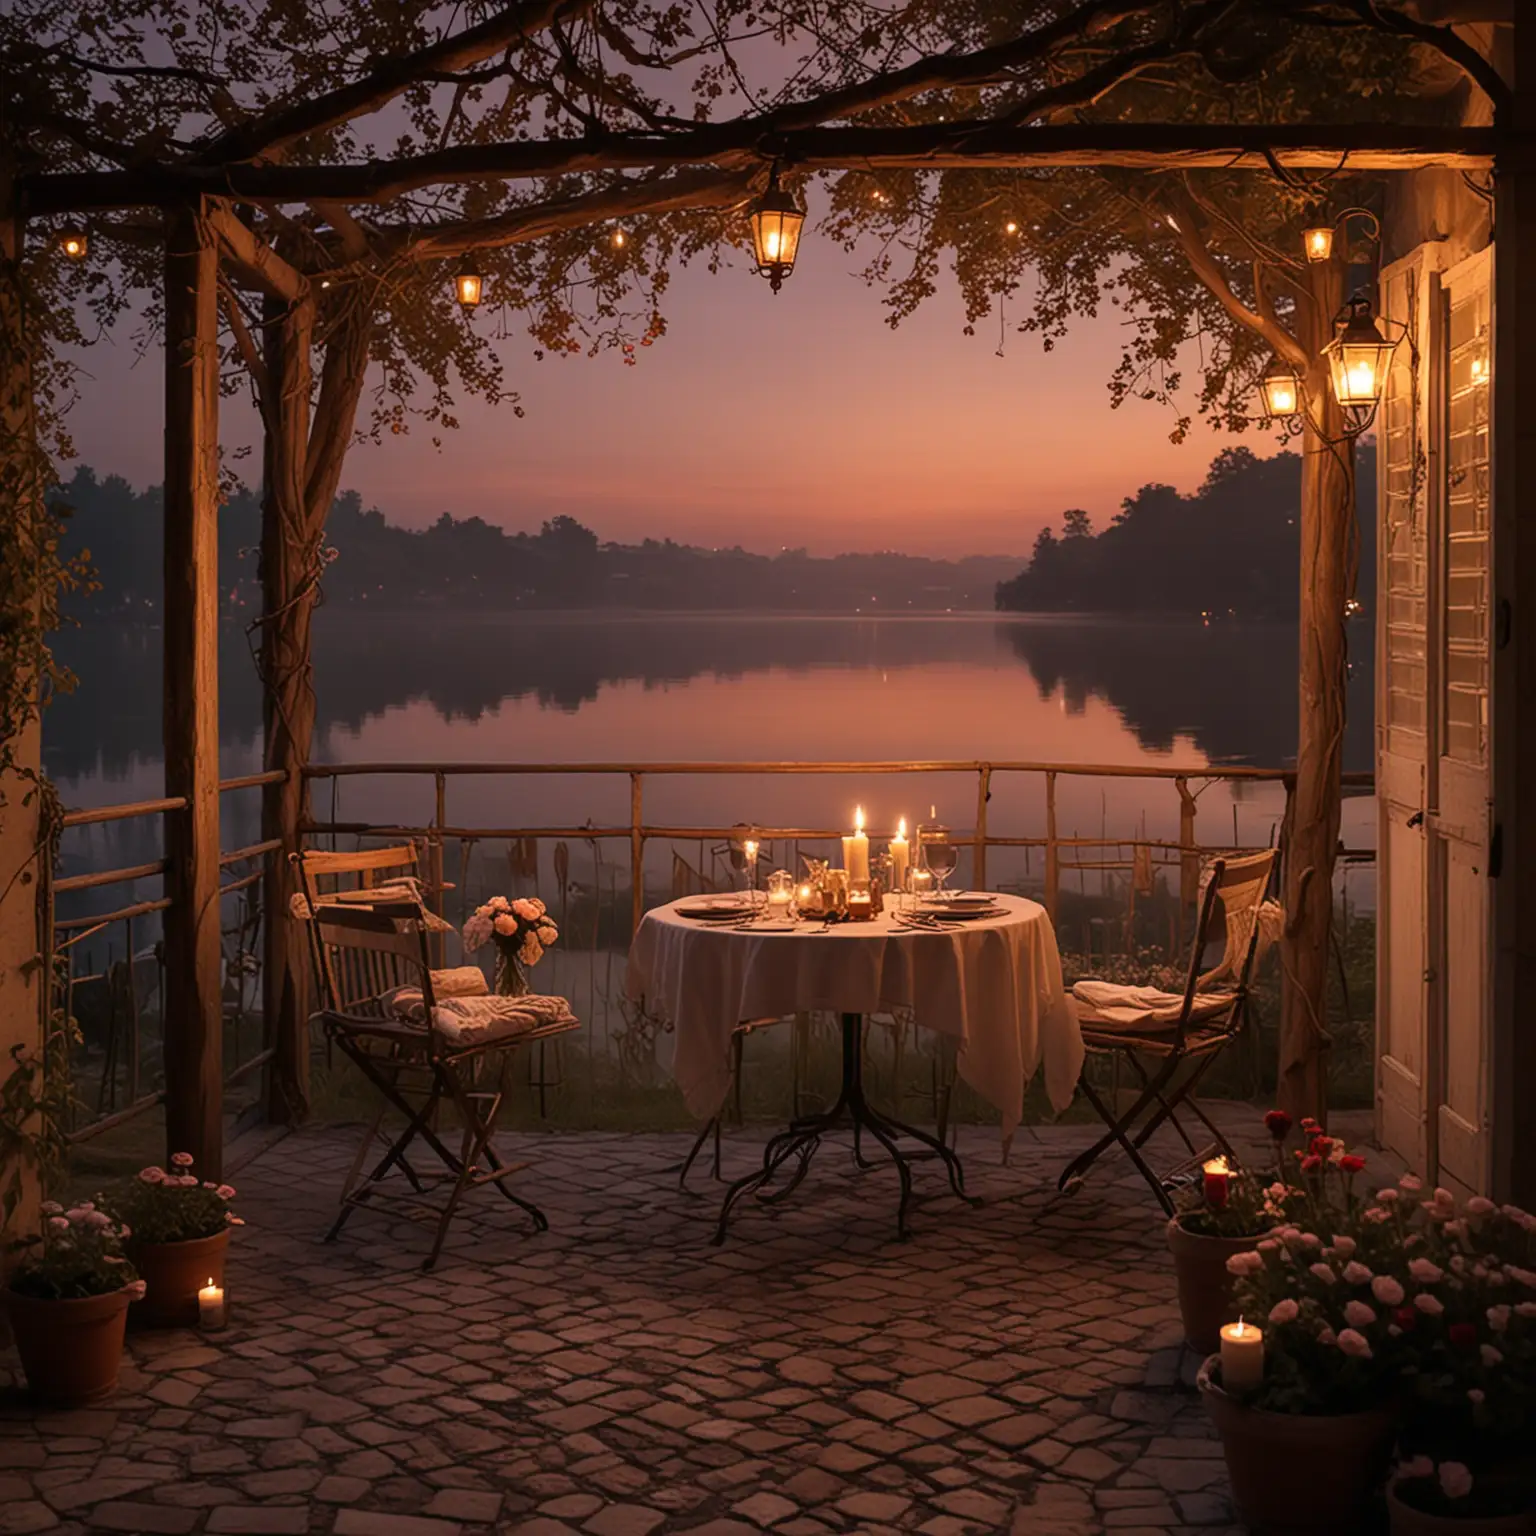 romantic atmosphere 

